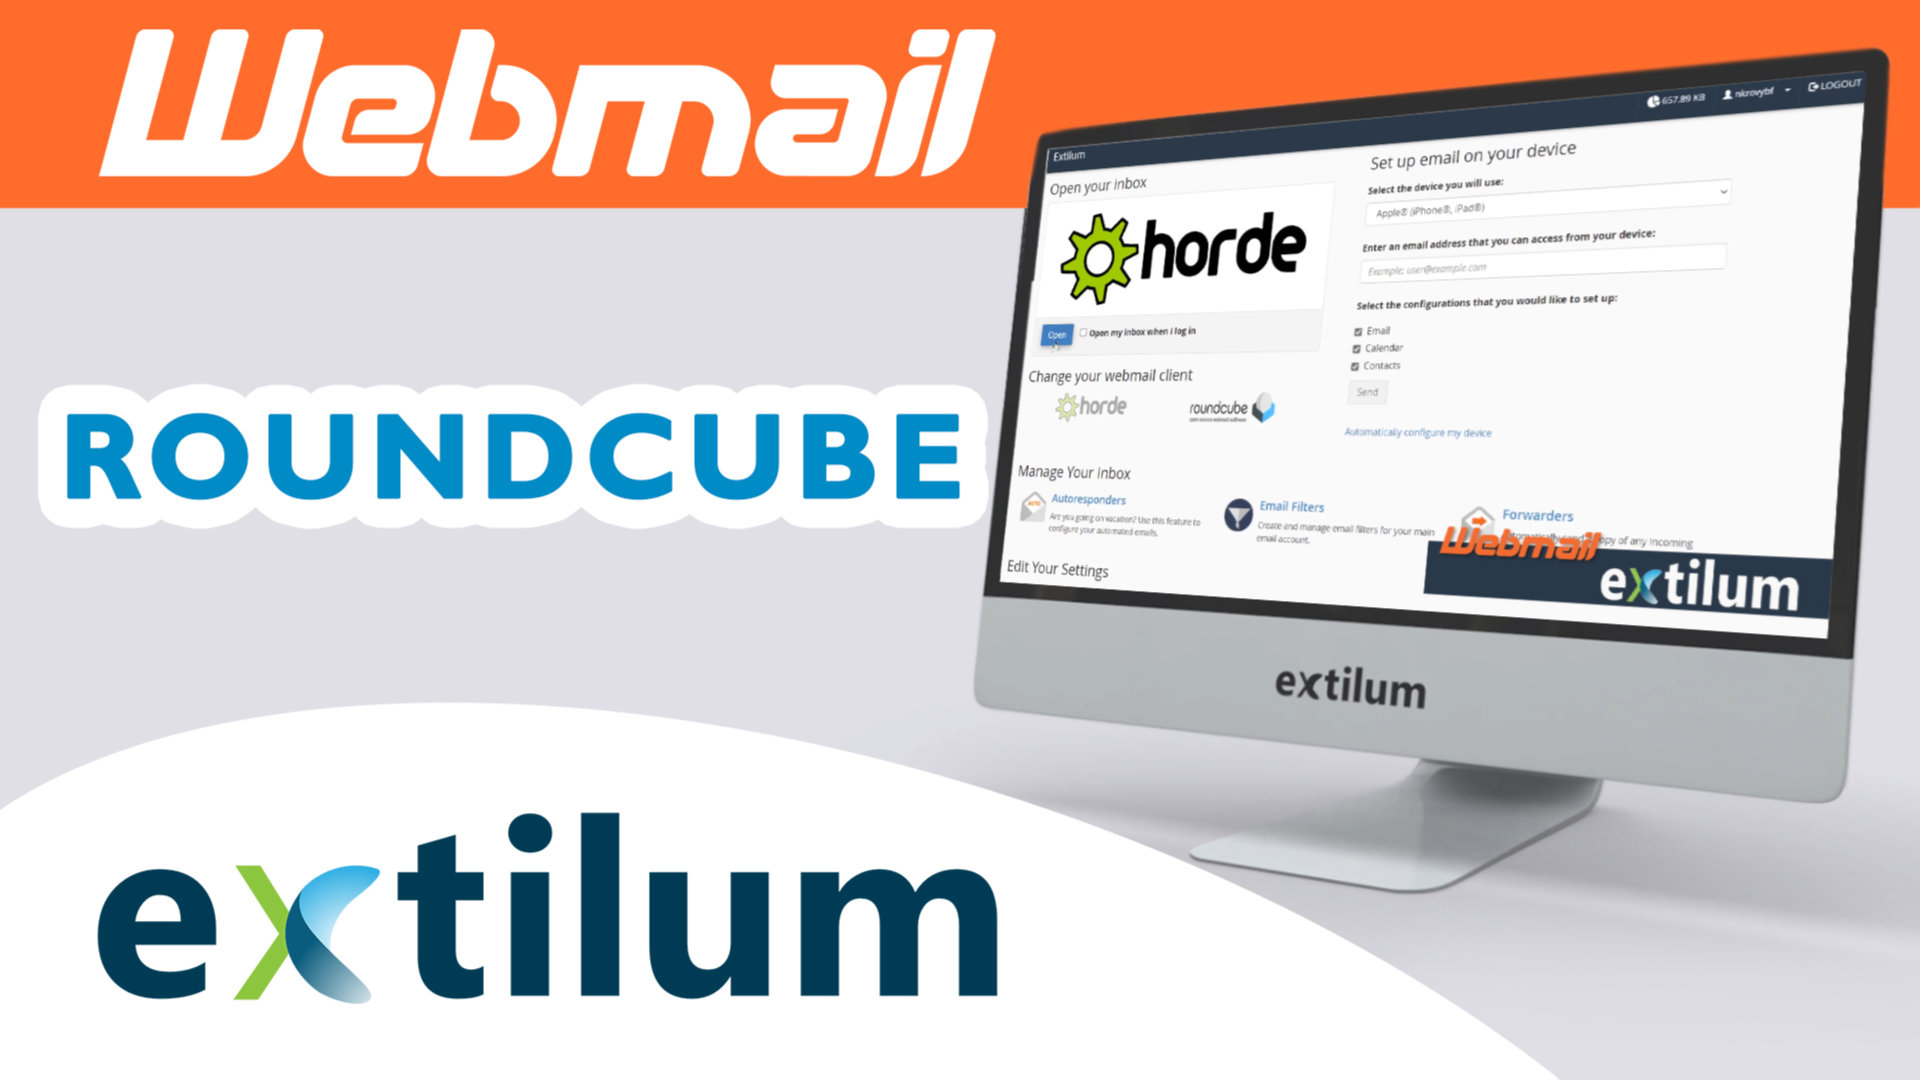 Extilum Webmail - Roundcube